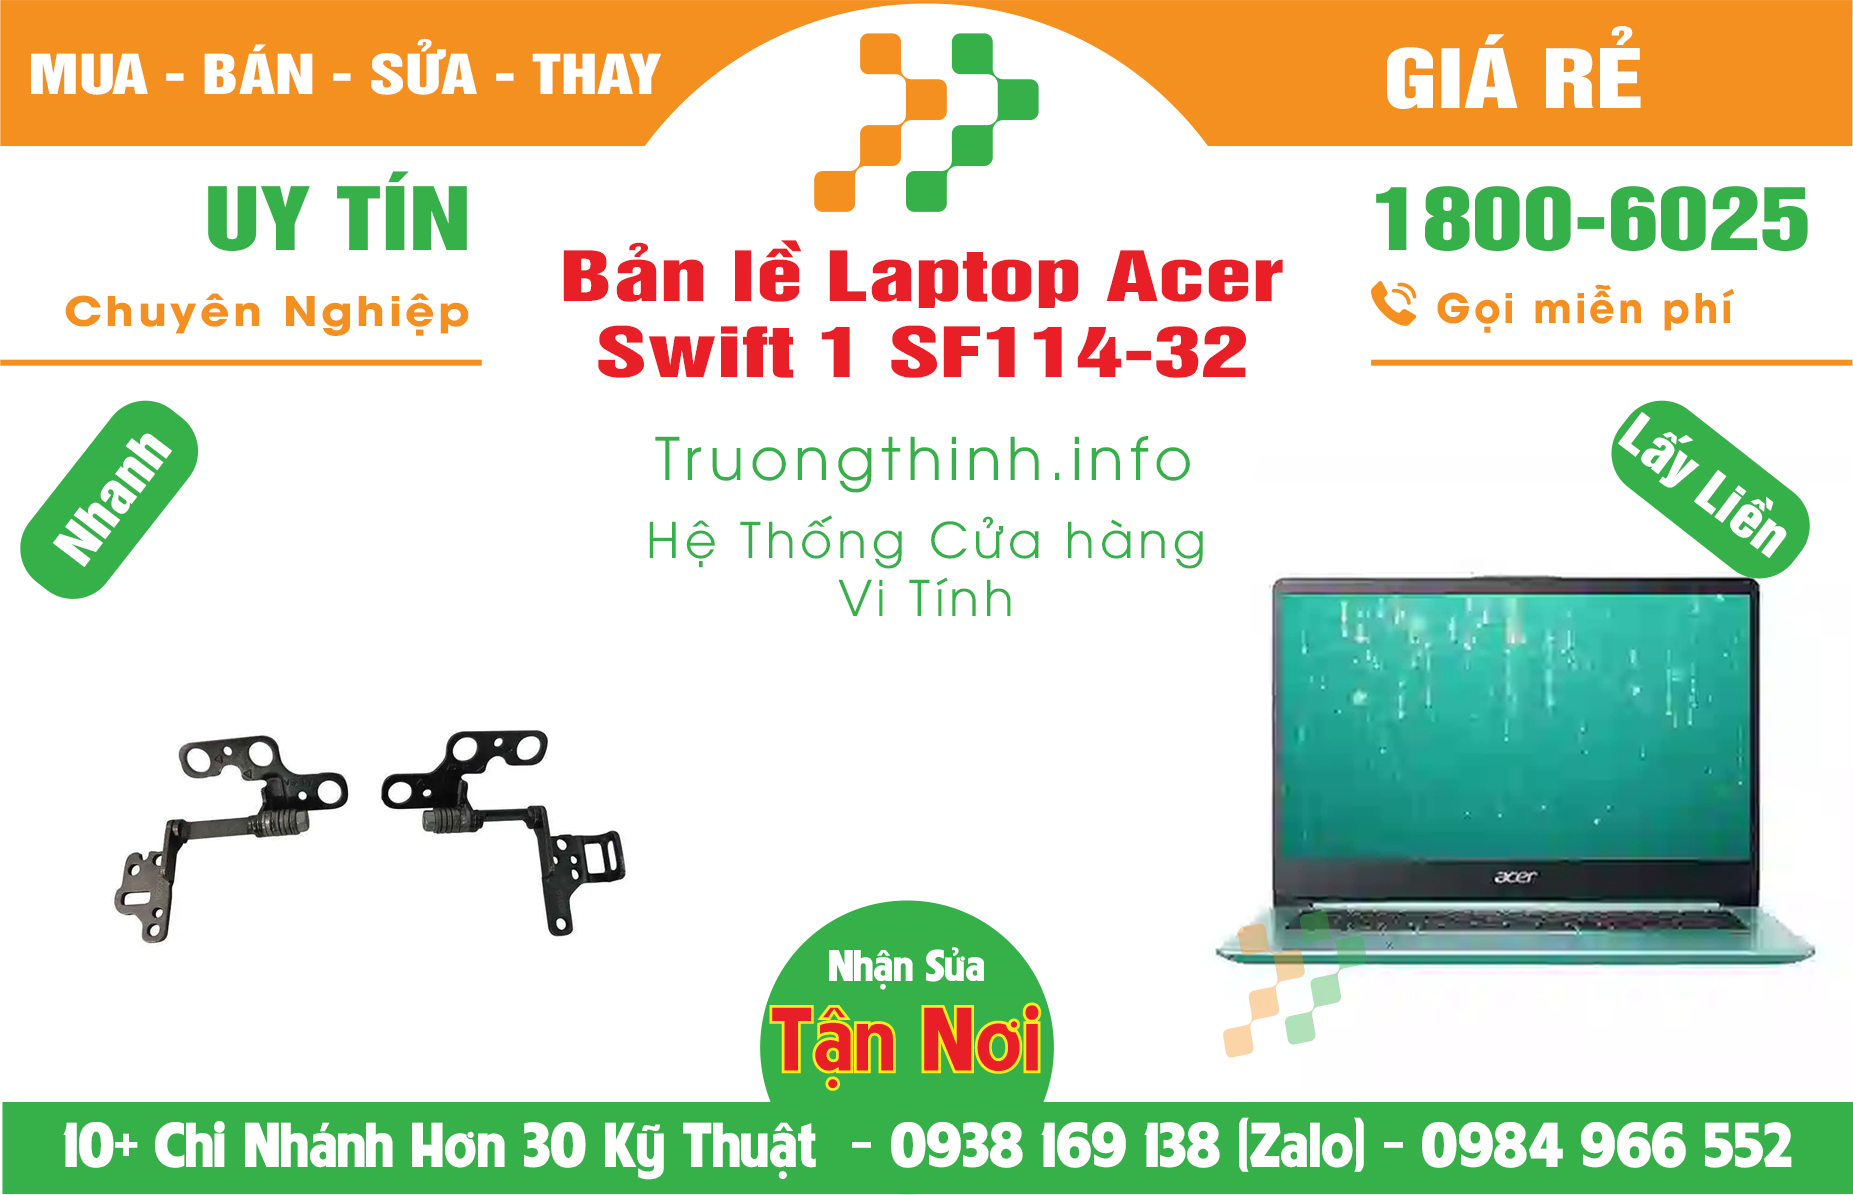 Mua Bán Bản lề Laptop Acer Swift 1 SF114-32 Giá Rẻ | Máy Tính Trường Thịnh Giá Rẻ